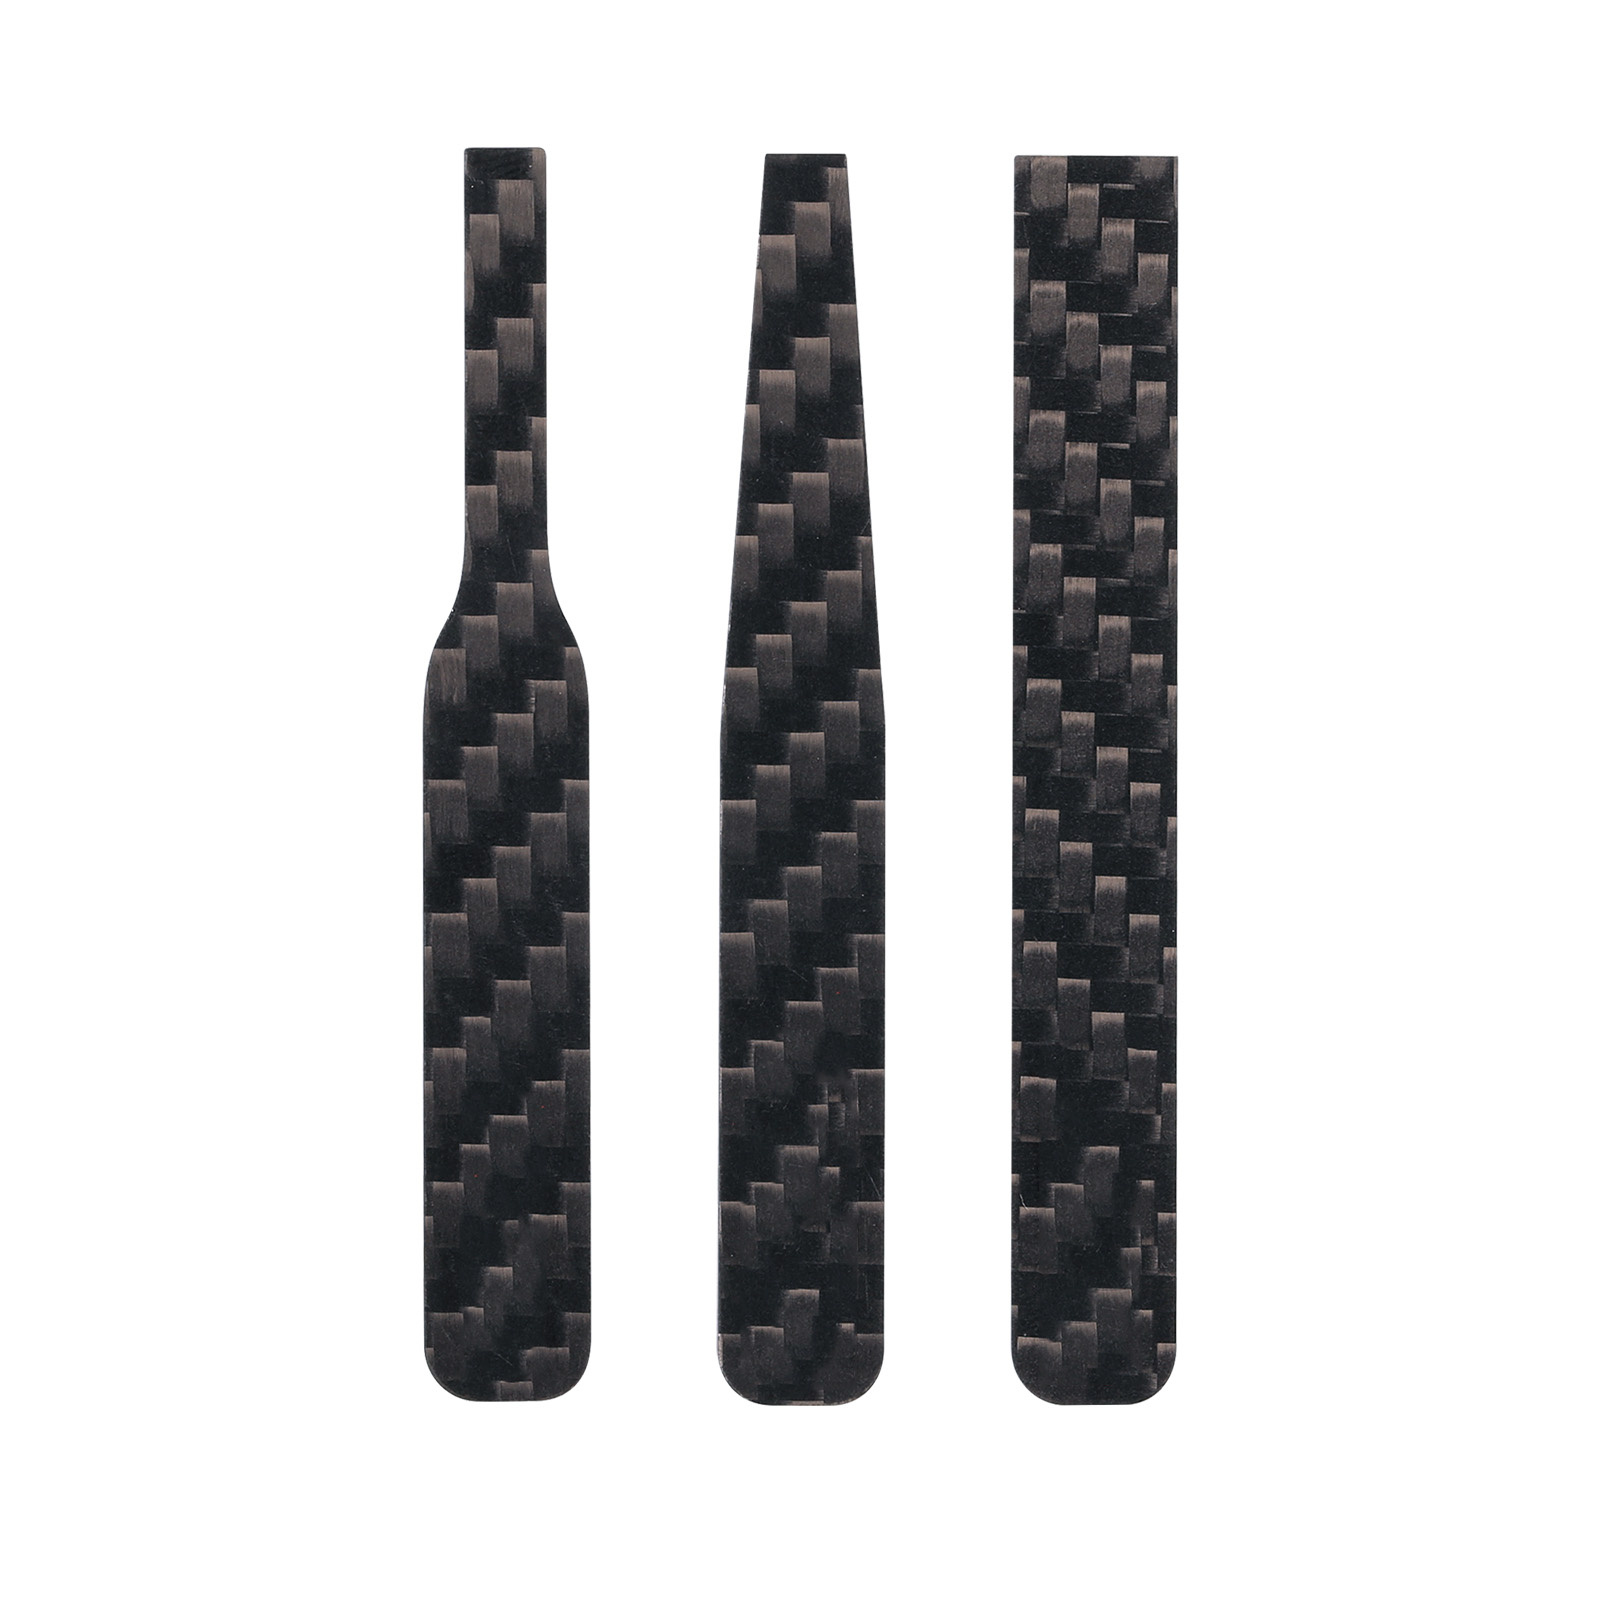 CFB-S03 DSPIAE Carbon fiber Grinding Tools, 3 pcs.